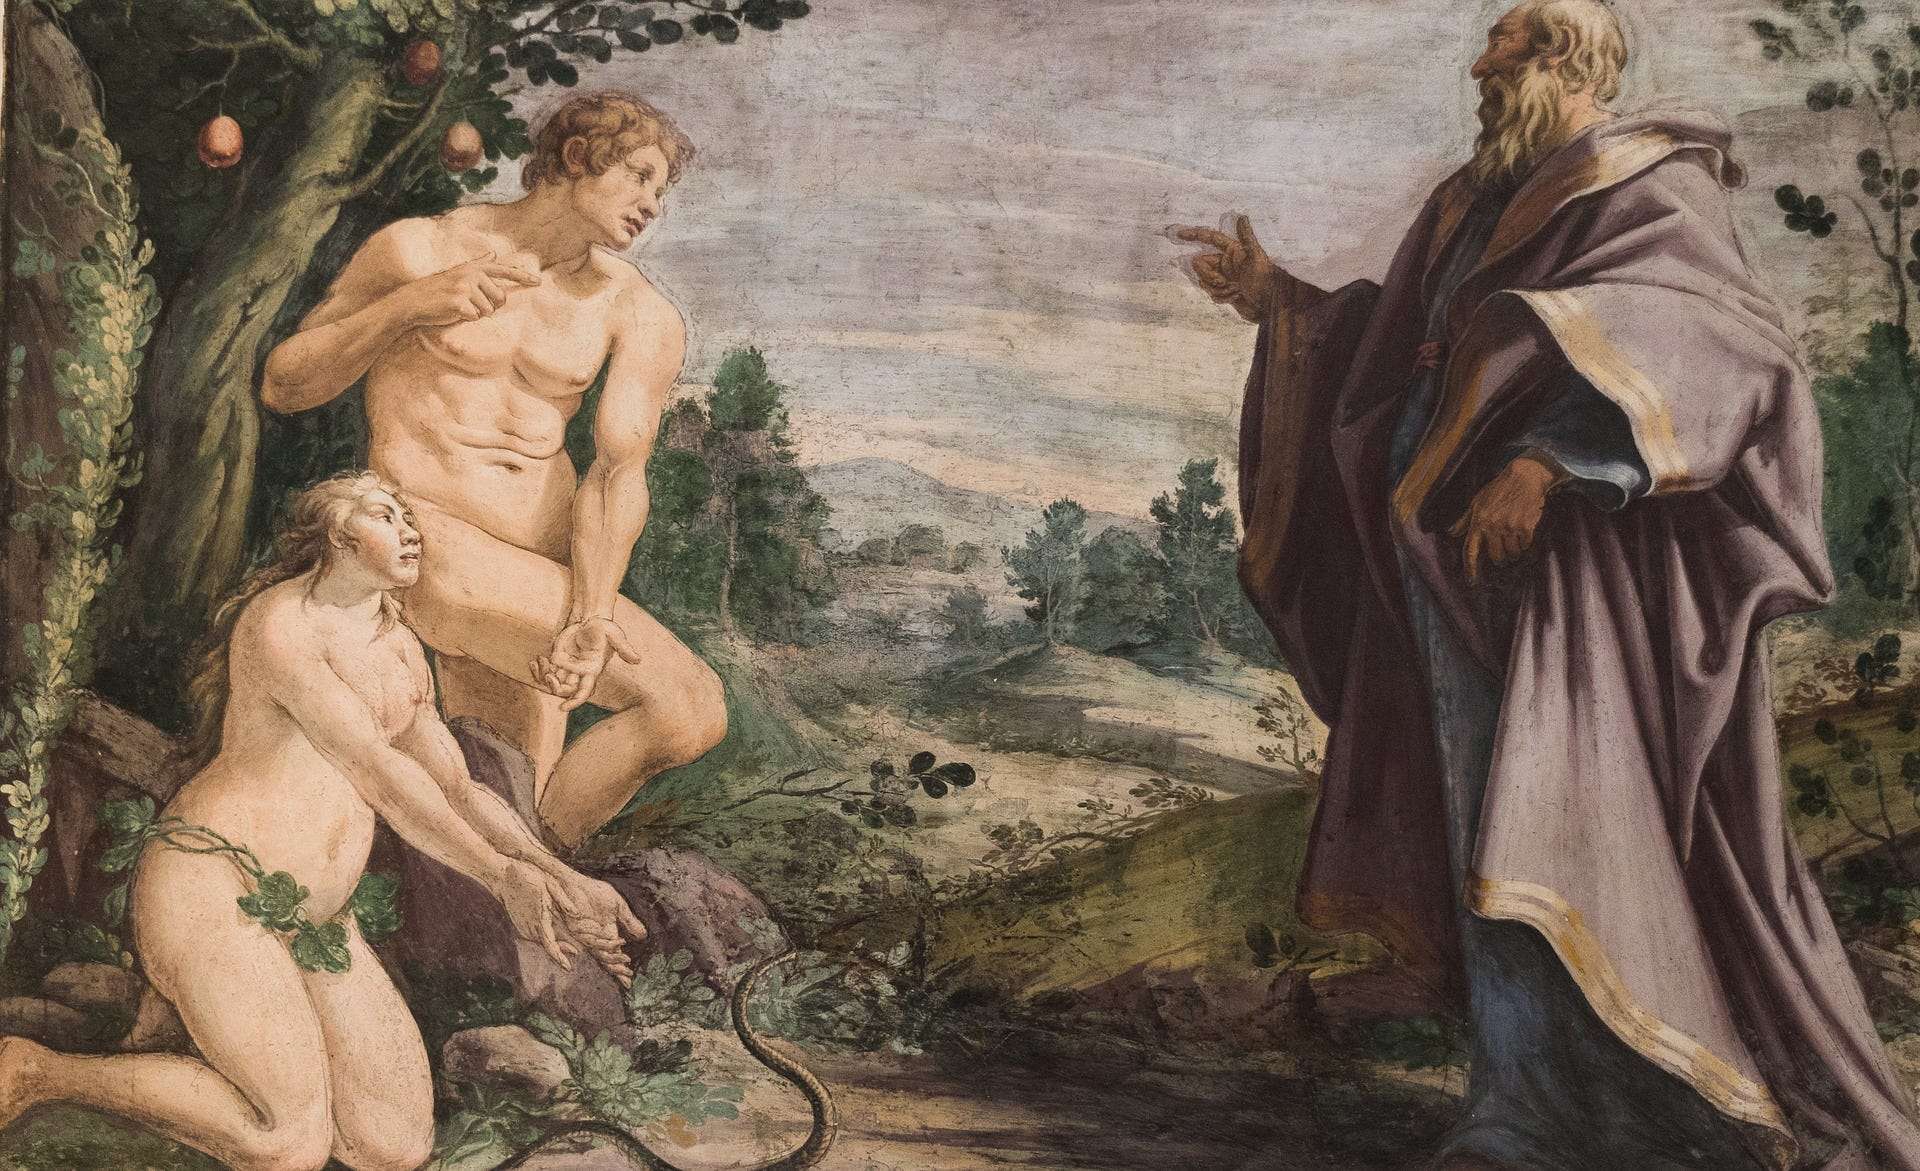 What language did Adam and Eve speak